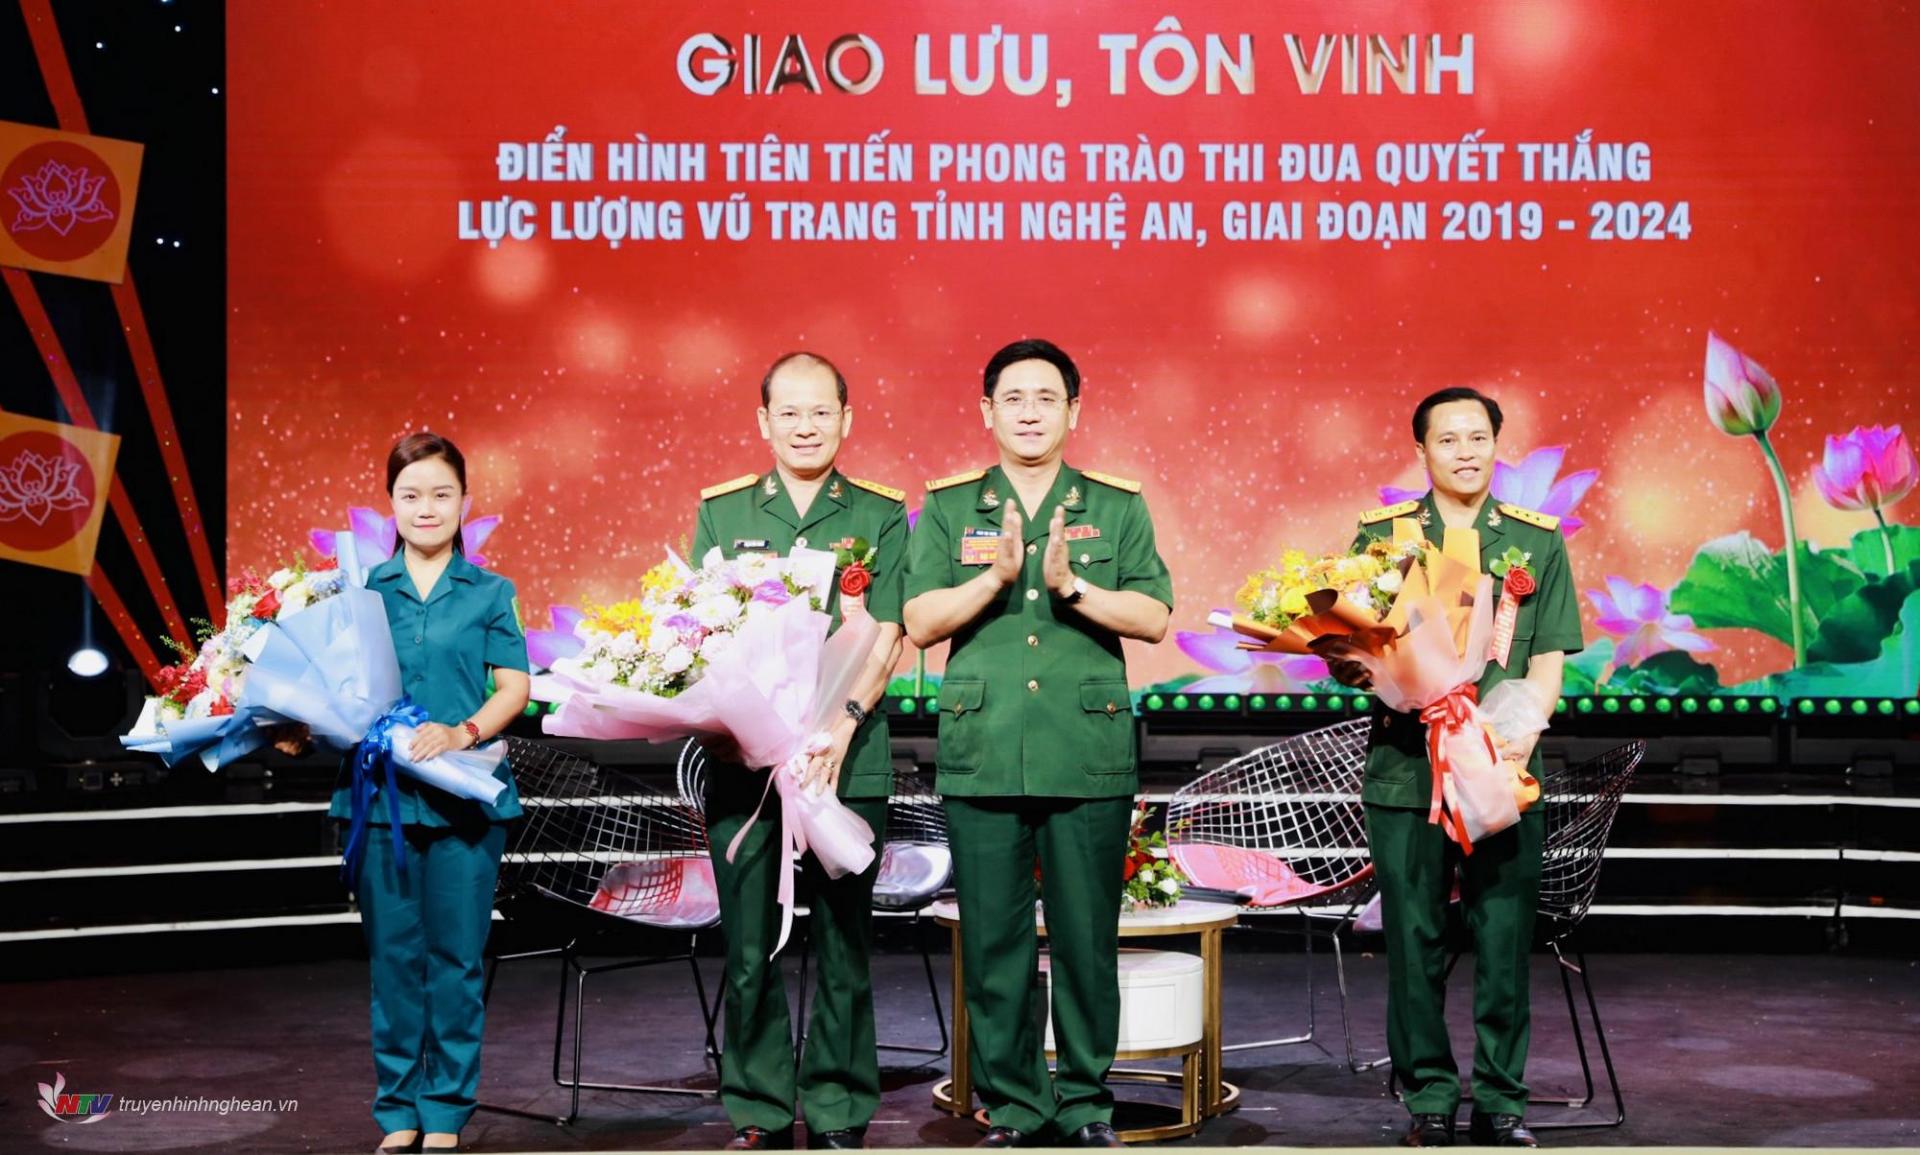 Đại tá Phan Đại Nghĩa, Ủy viên BTV Tỉnh ủy, Chỉ huy trưởng Bộ CHQS tỉnh tặng hoa cảm ơn các khách mời tham gia giao lưu tại chương trình.